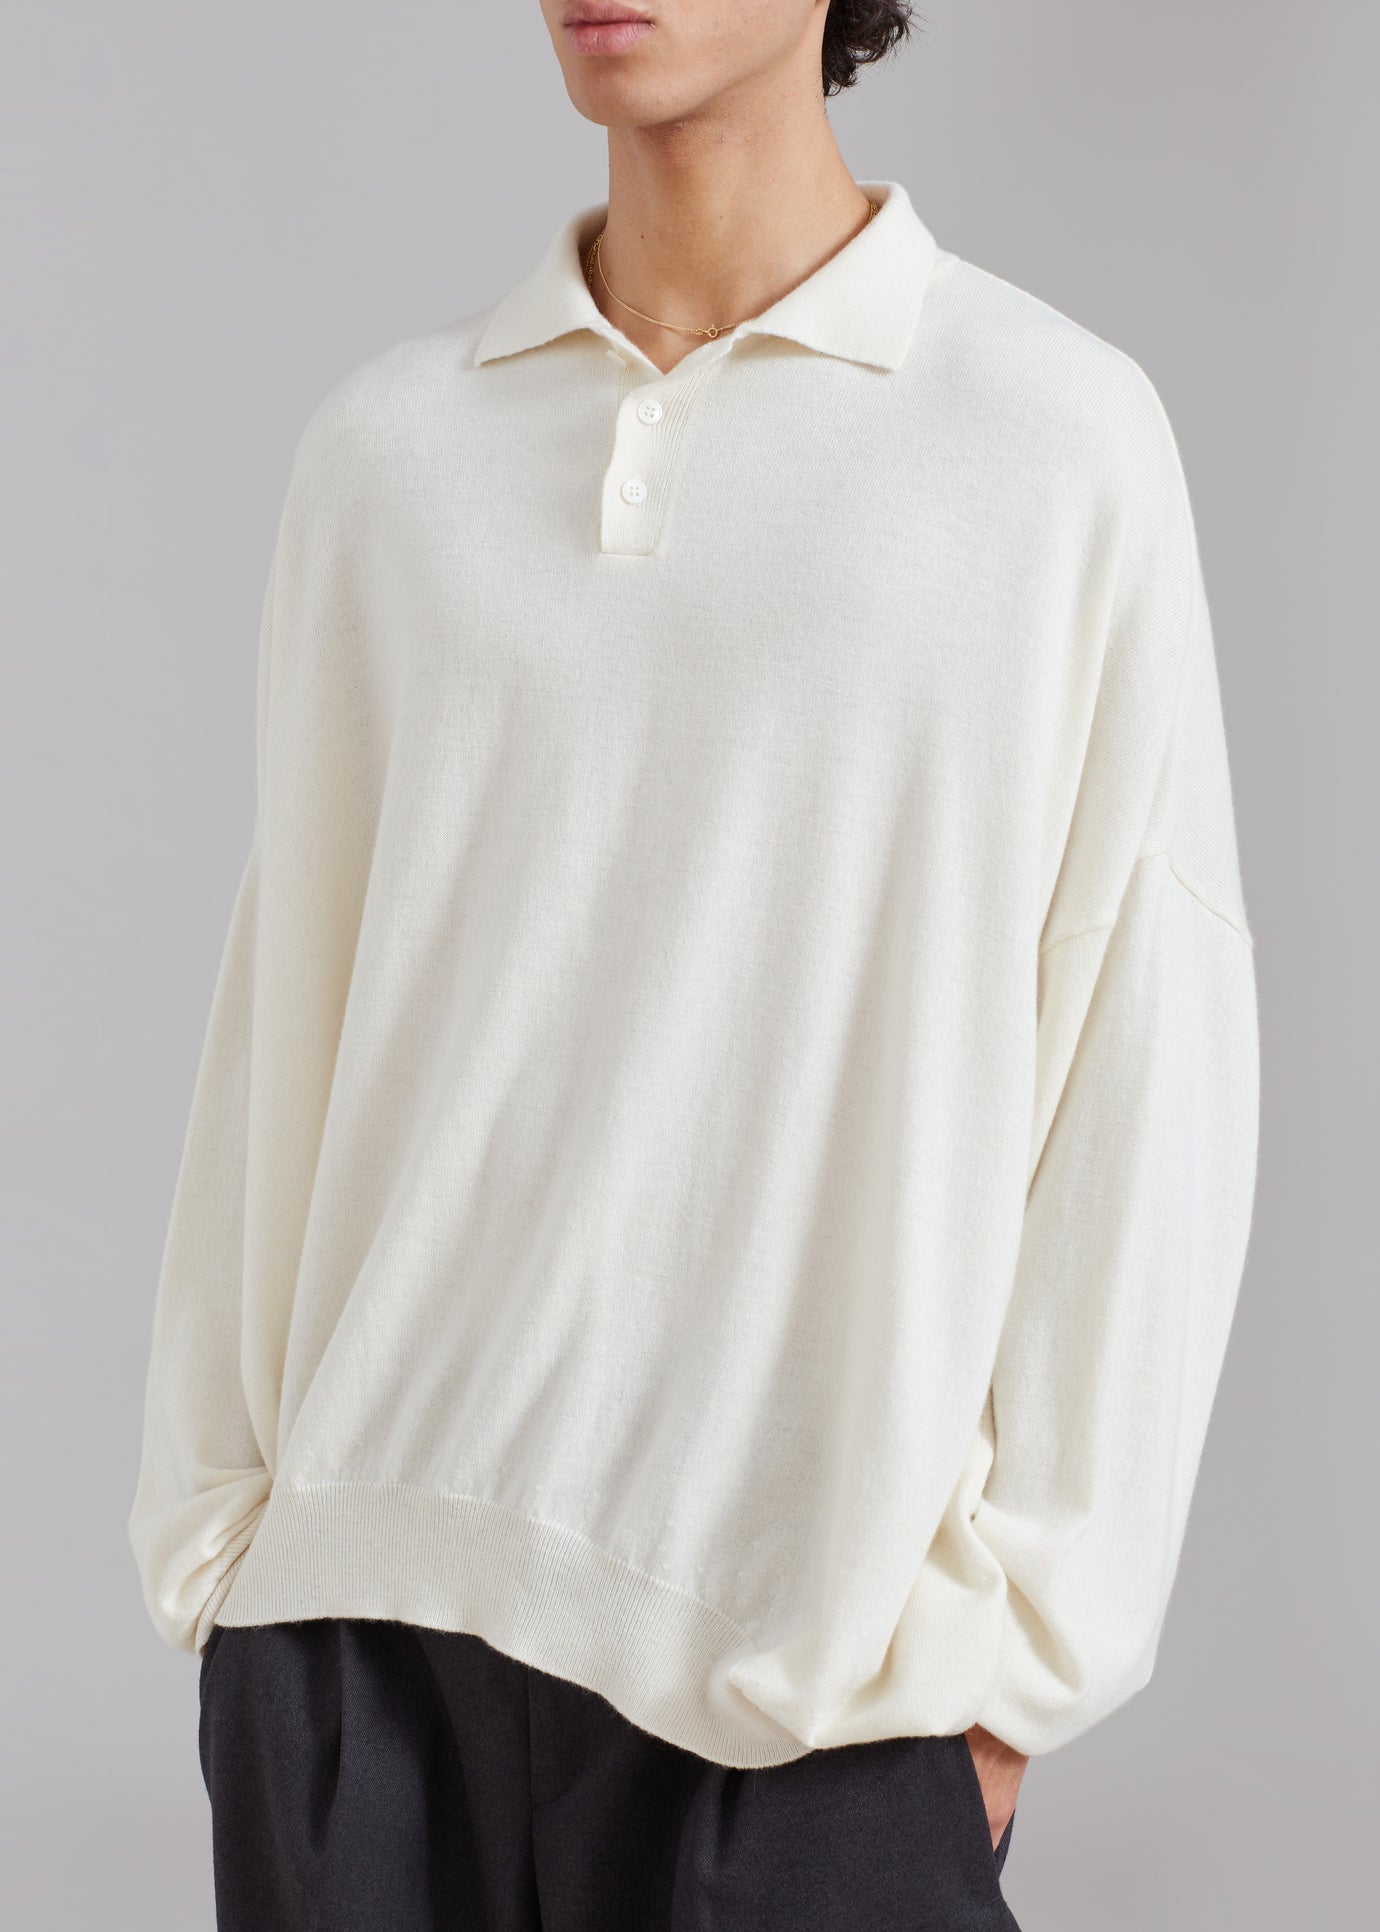 Meriel Polo Sweater - Cream - 1